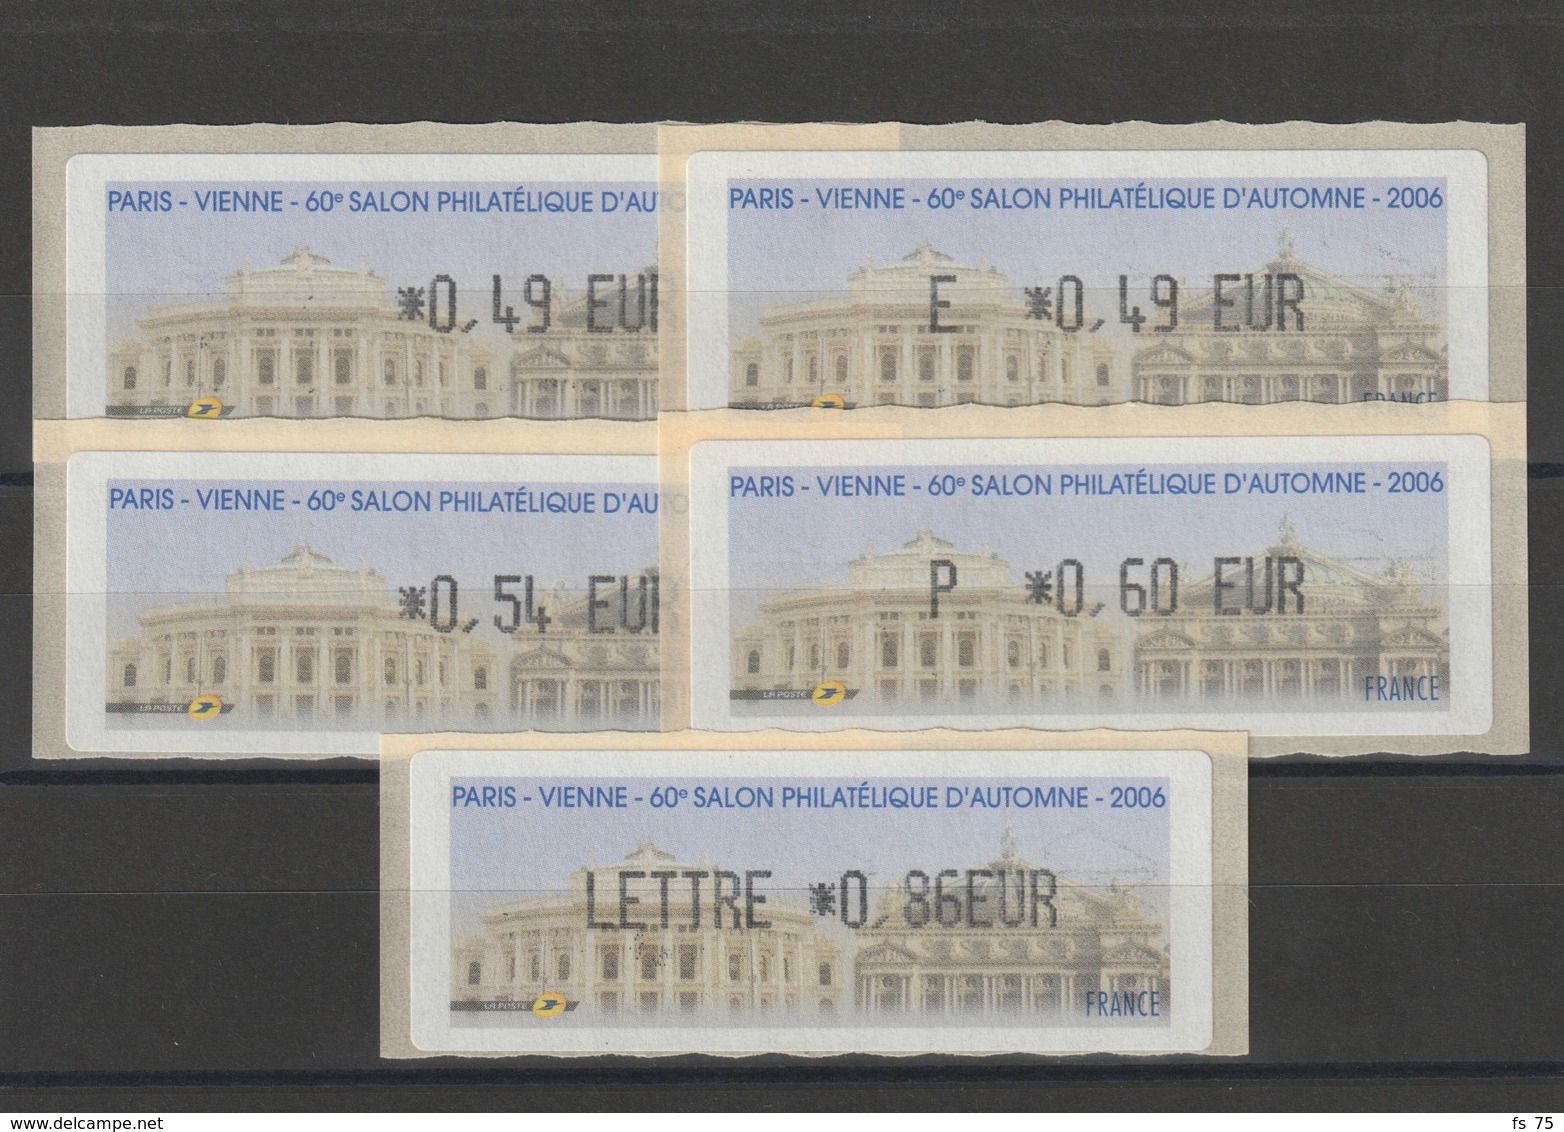 FRANCE - 5 VIGNETTES 0,49€, E. 0,49€, 0,54€, 0,60€ ET 0,86€ - PARIS - VIENNE - 60EME SALON PHILATELIQUE D'AUTOMNE 2006 - 1999-2009 Viñetas De Franqueo Illustradas